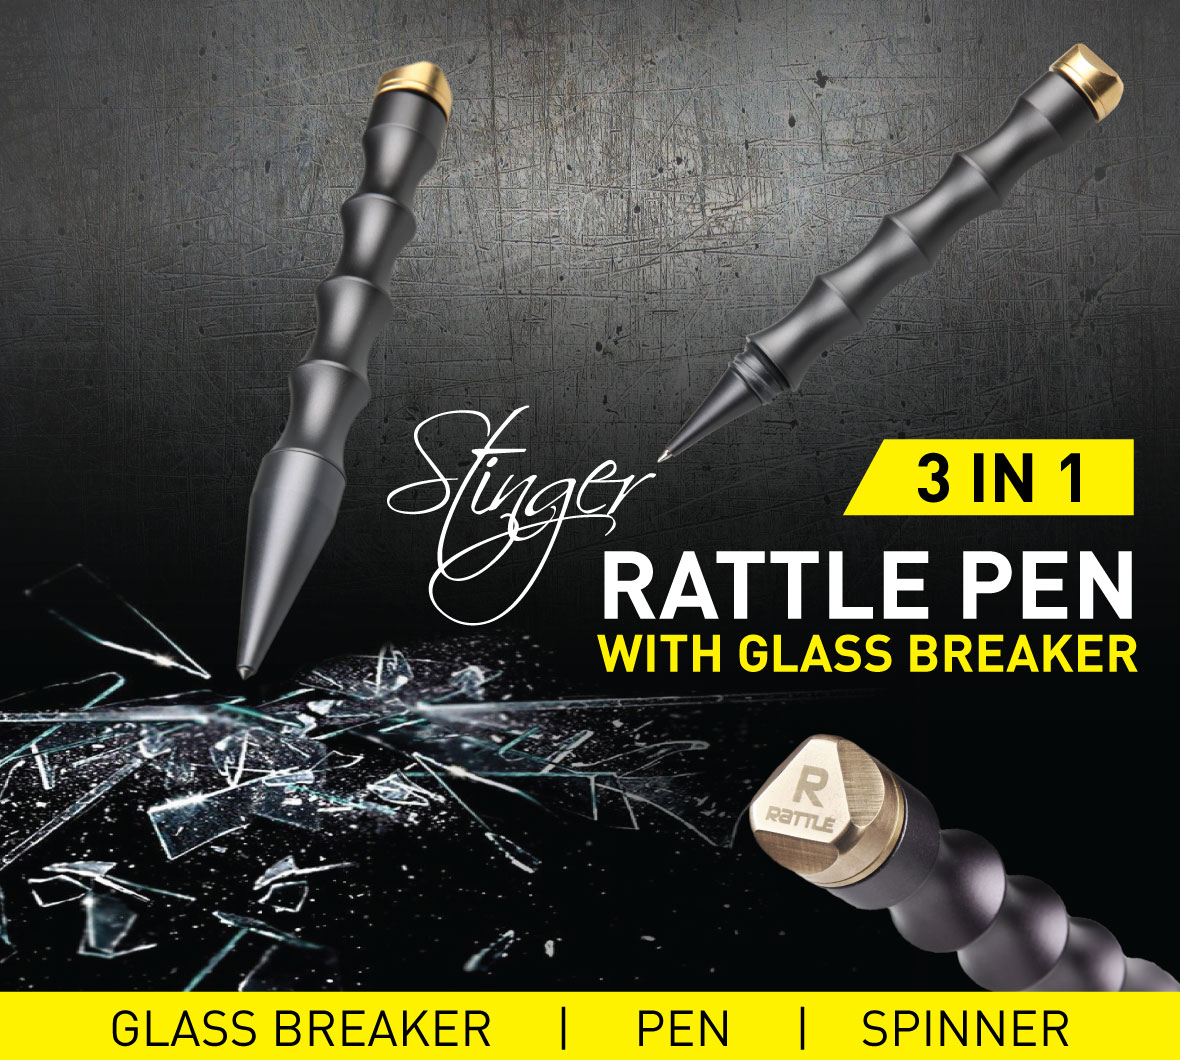 3 in 1 Rattle Pen with Glass Breaker